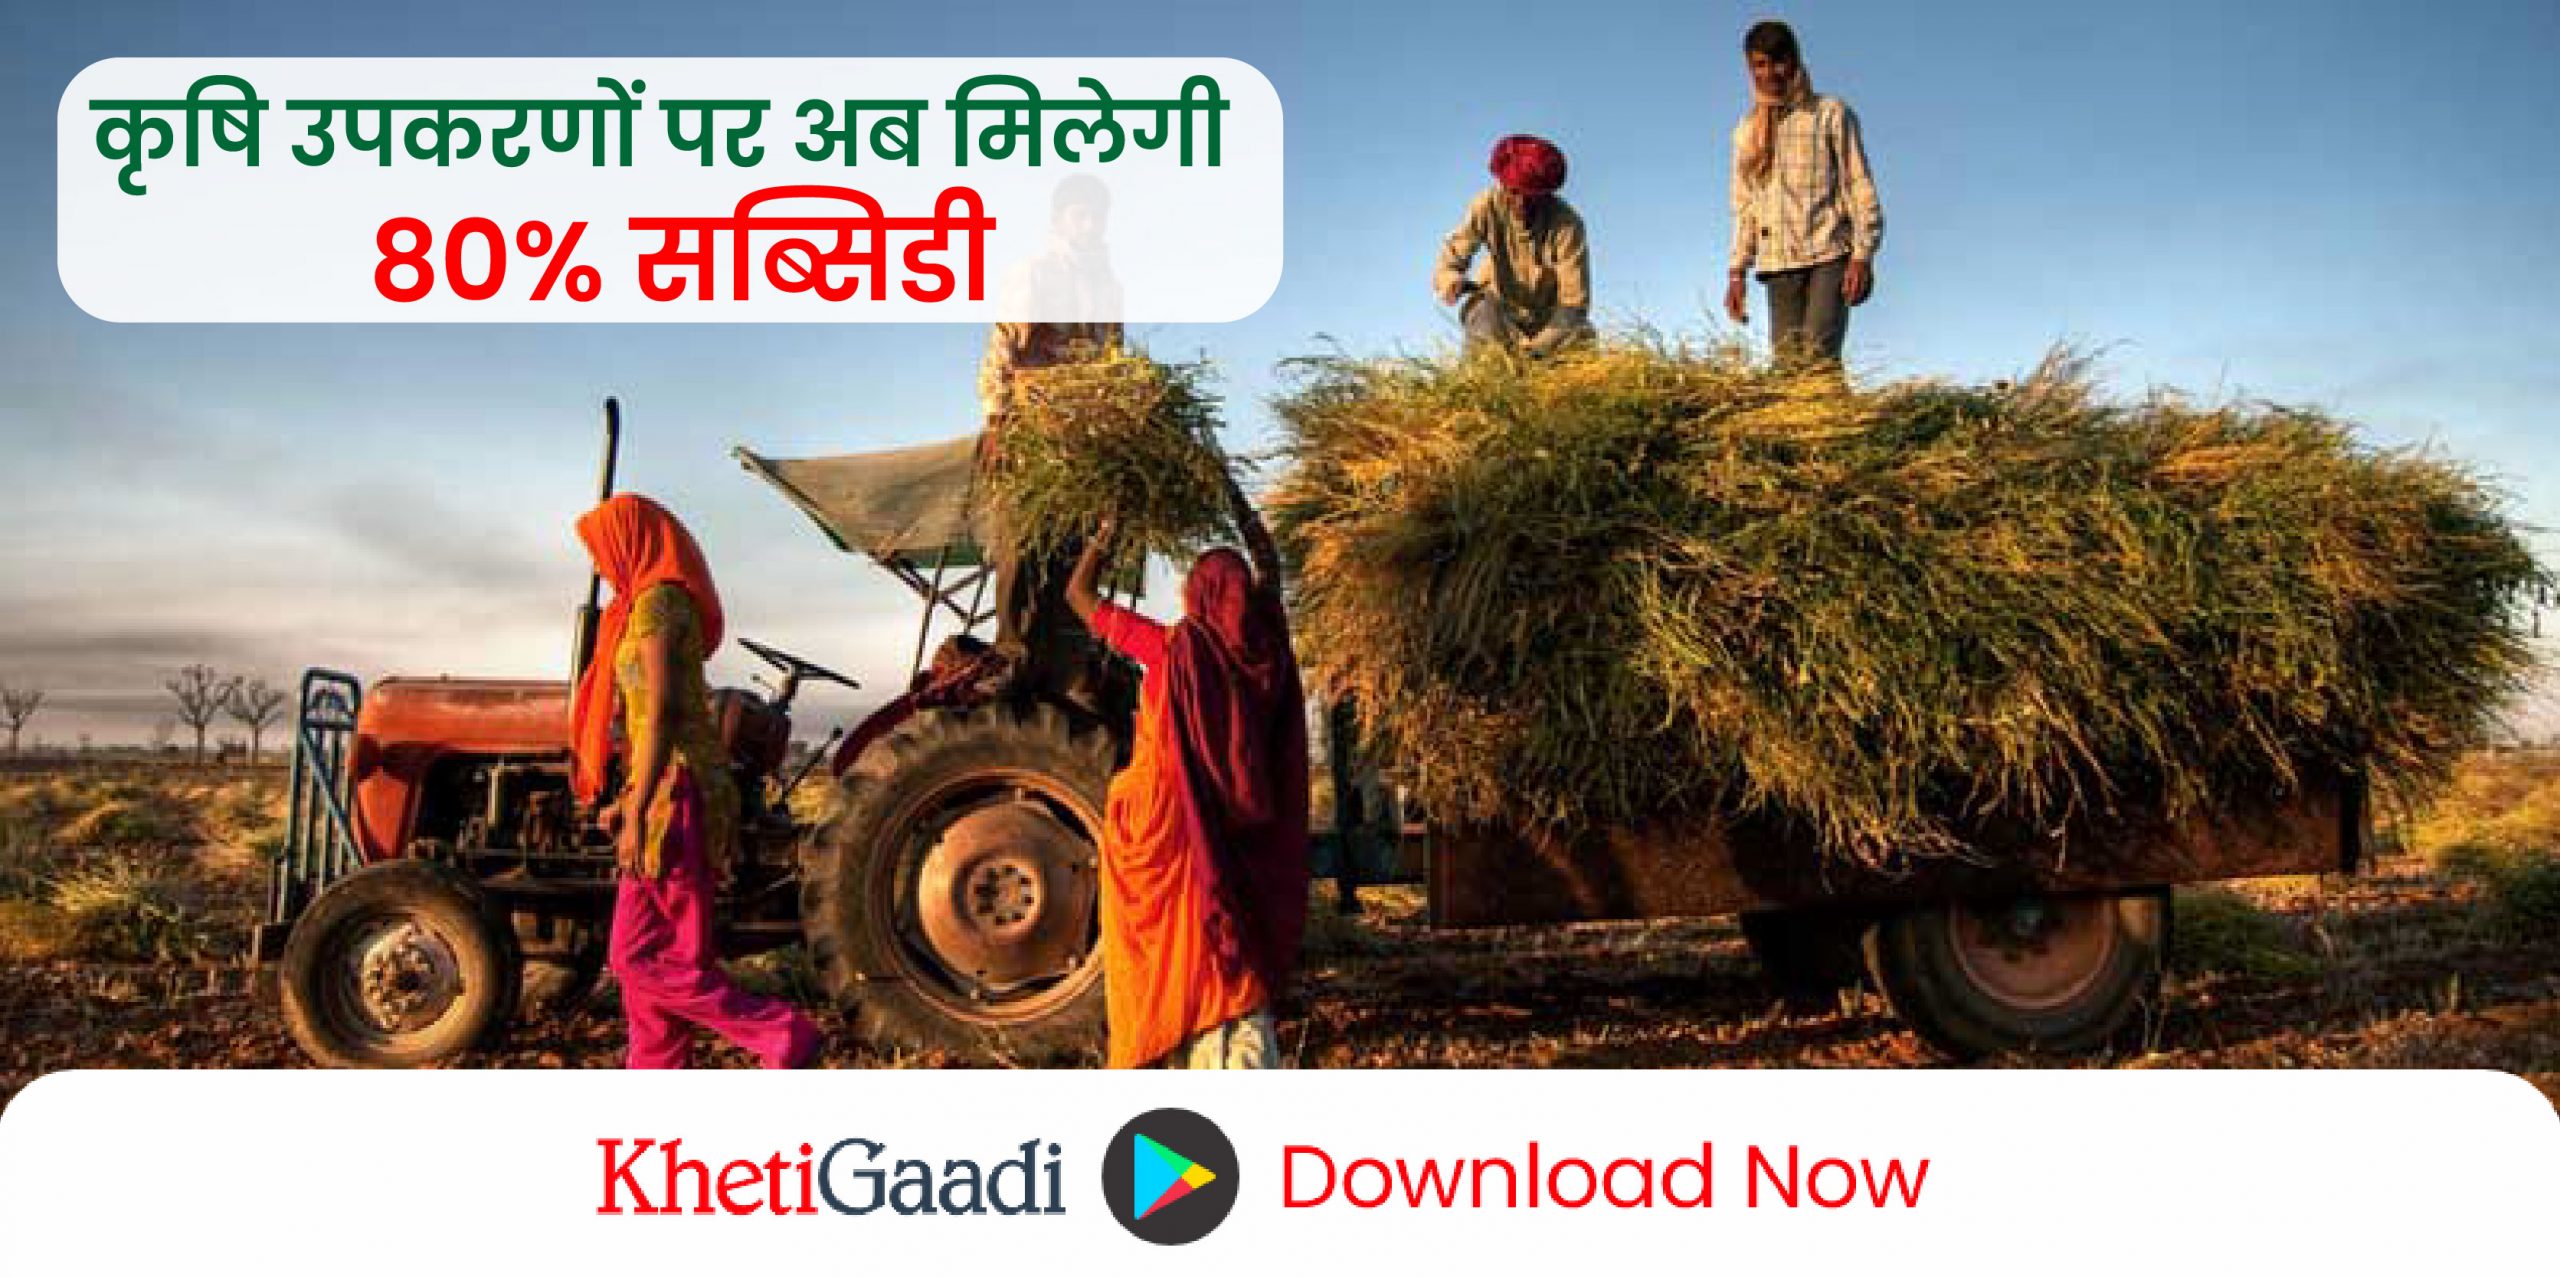 किसानों के लिए अपडेट: झारखंड के किसानो को  कृषि उपकरणों पर अब मिलेगी  80% सब्सिडी 